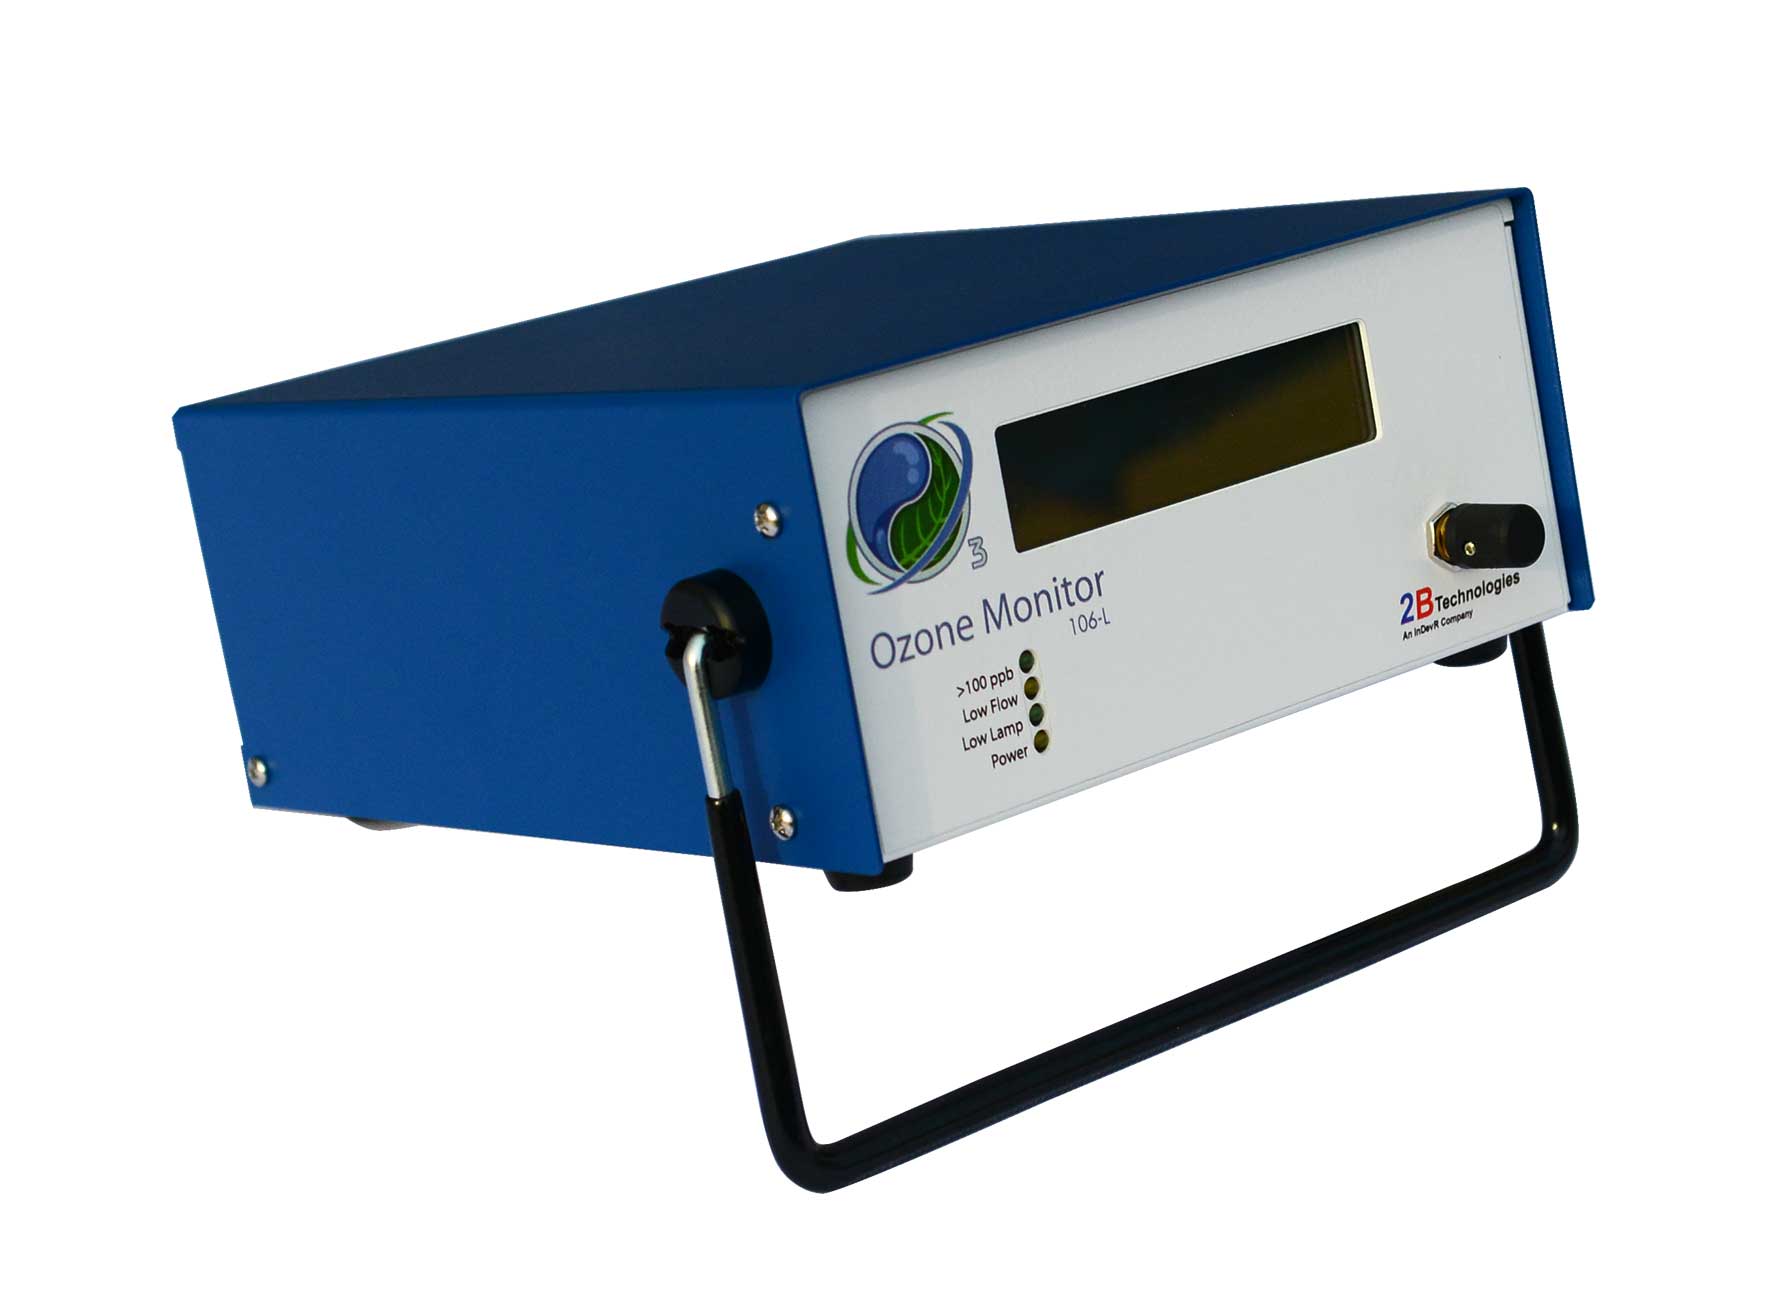 2B Model 106-H型高浓度臭氧监测仪 臭氧浓度0-20 wt％